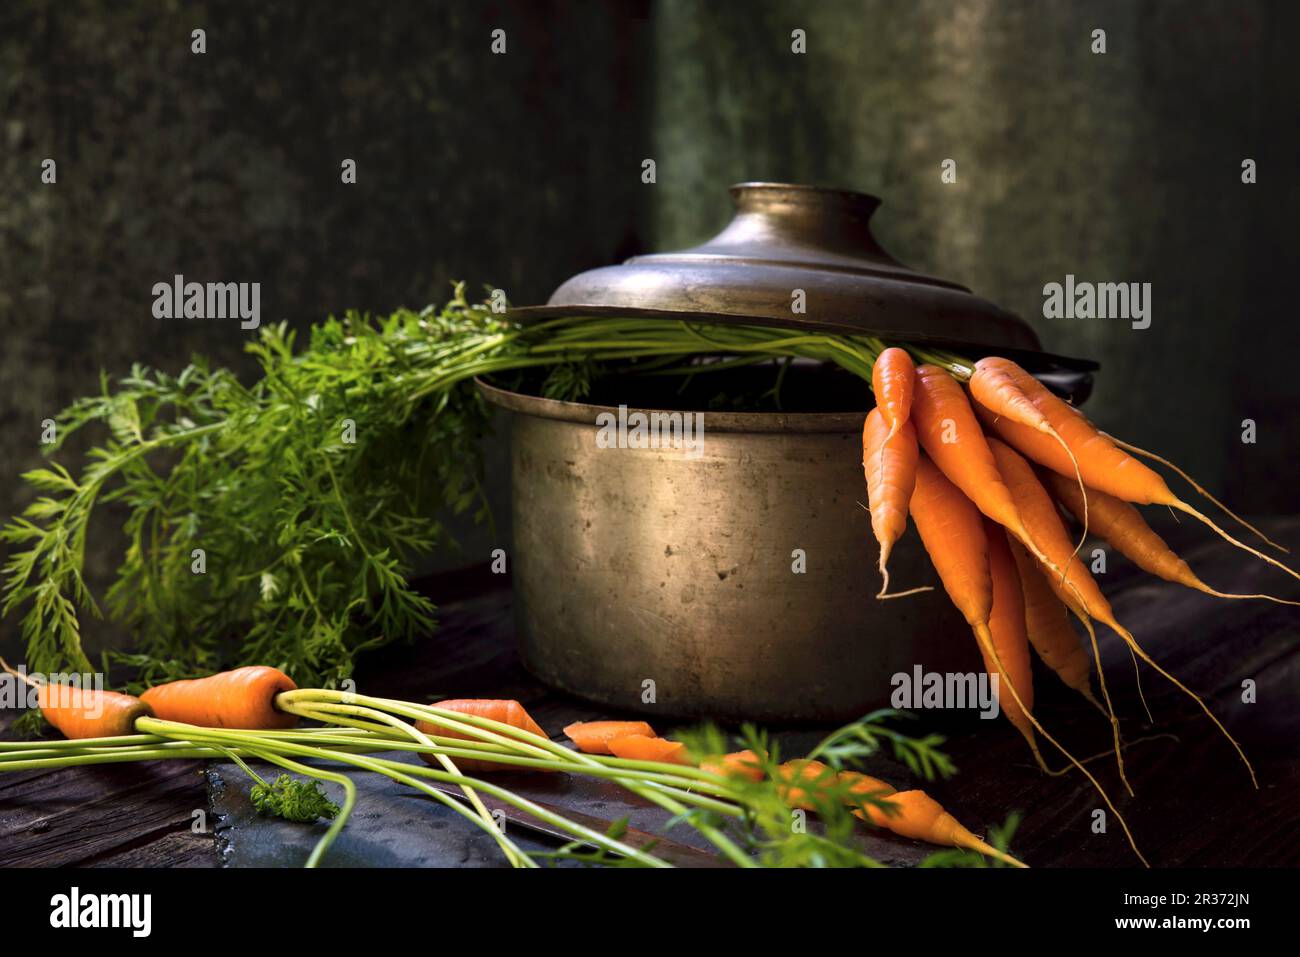 Carottes fraîches dans une casserole Photo Stock - Alamy